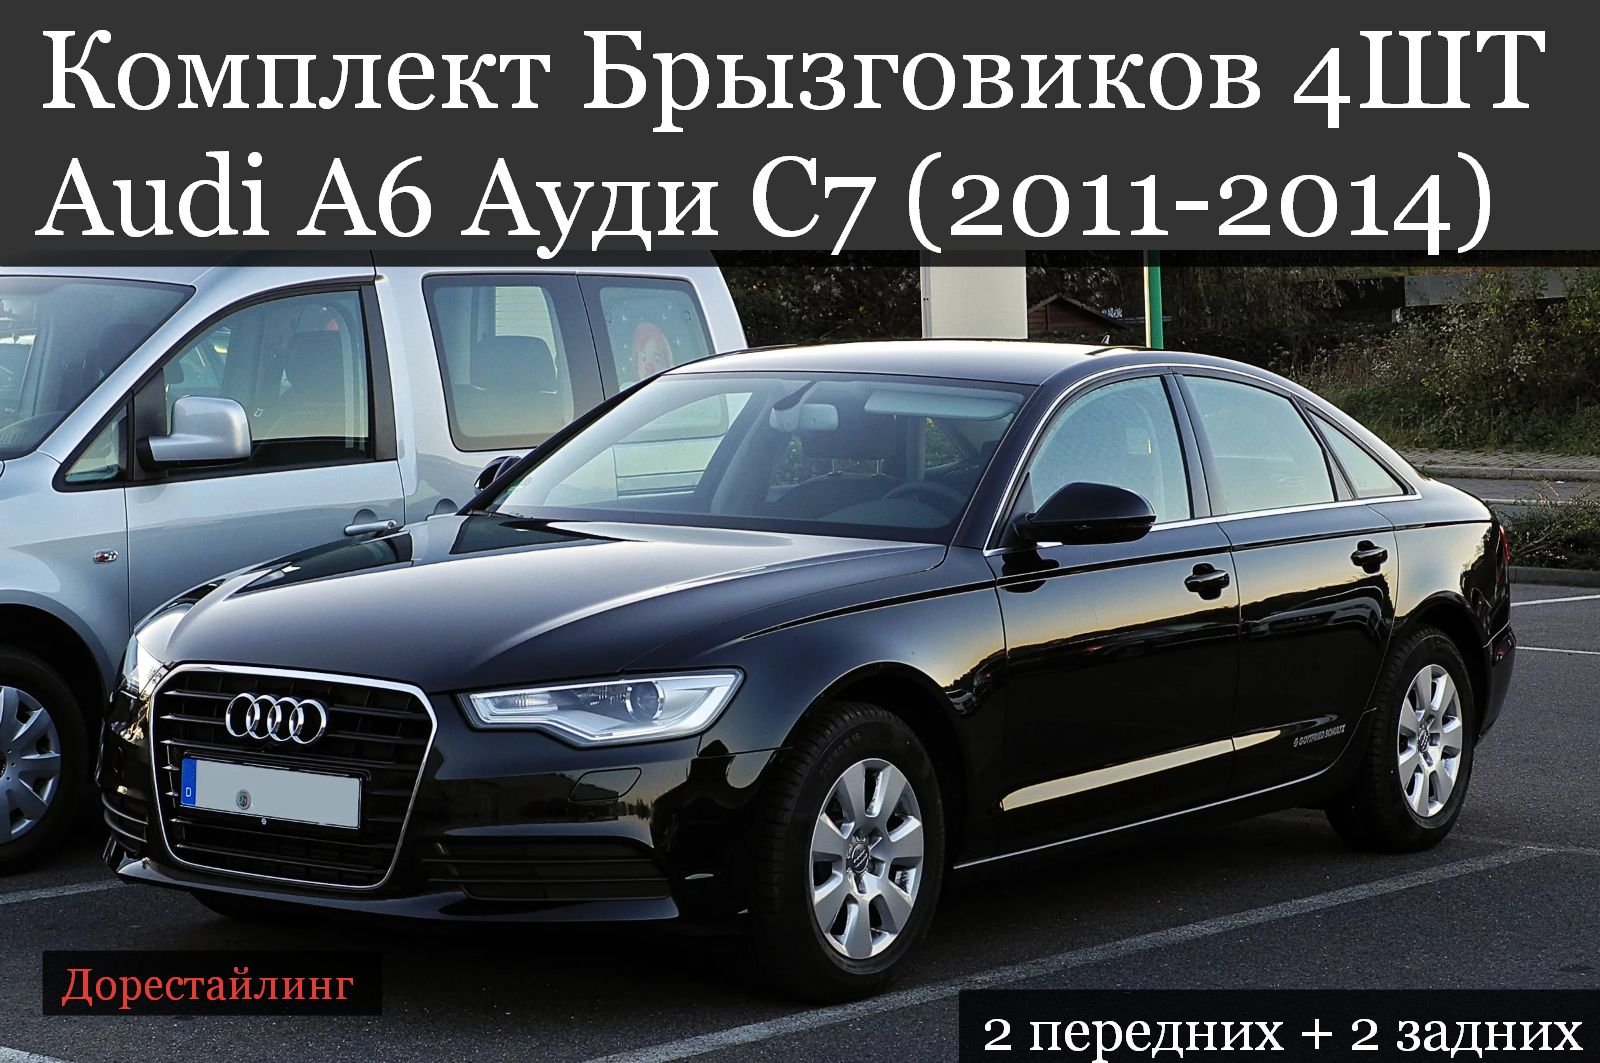 Авито купить машину ауди. Audi a6 2011. Ауди а6 2011. Audi a6 c7. Audi a6 c6 2011.